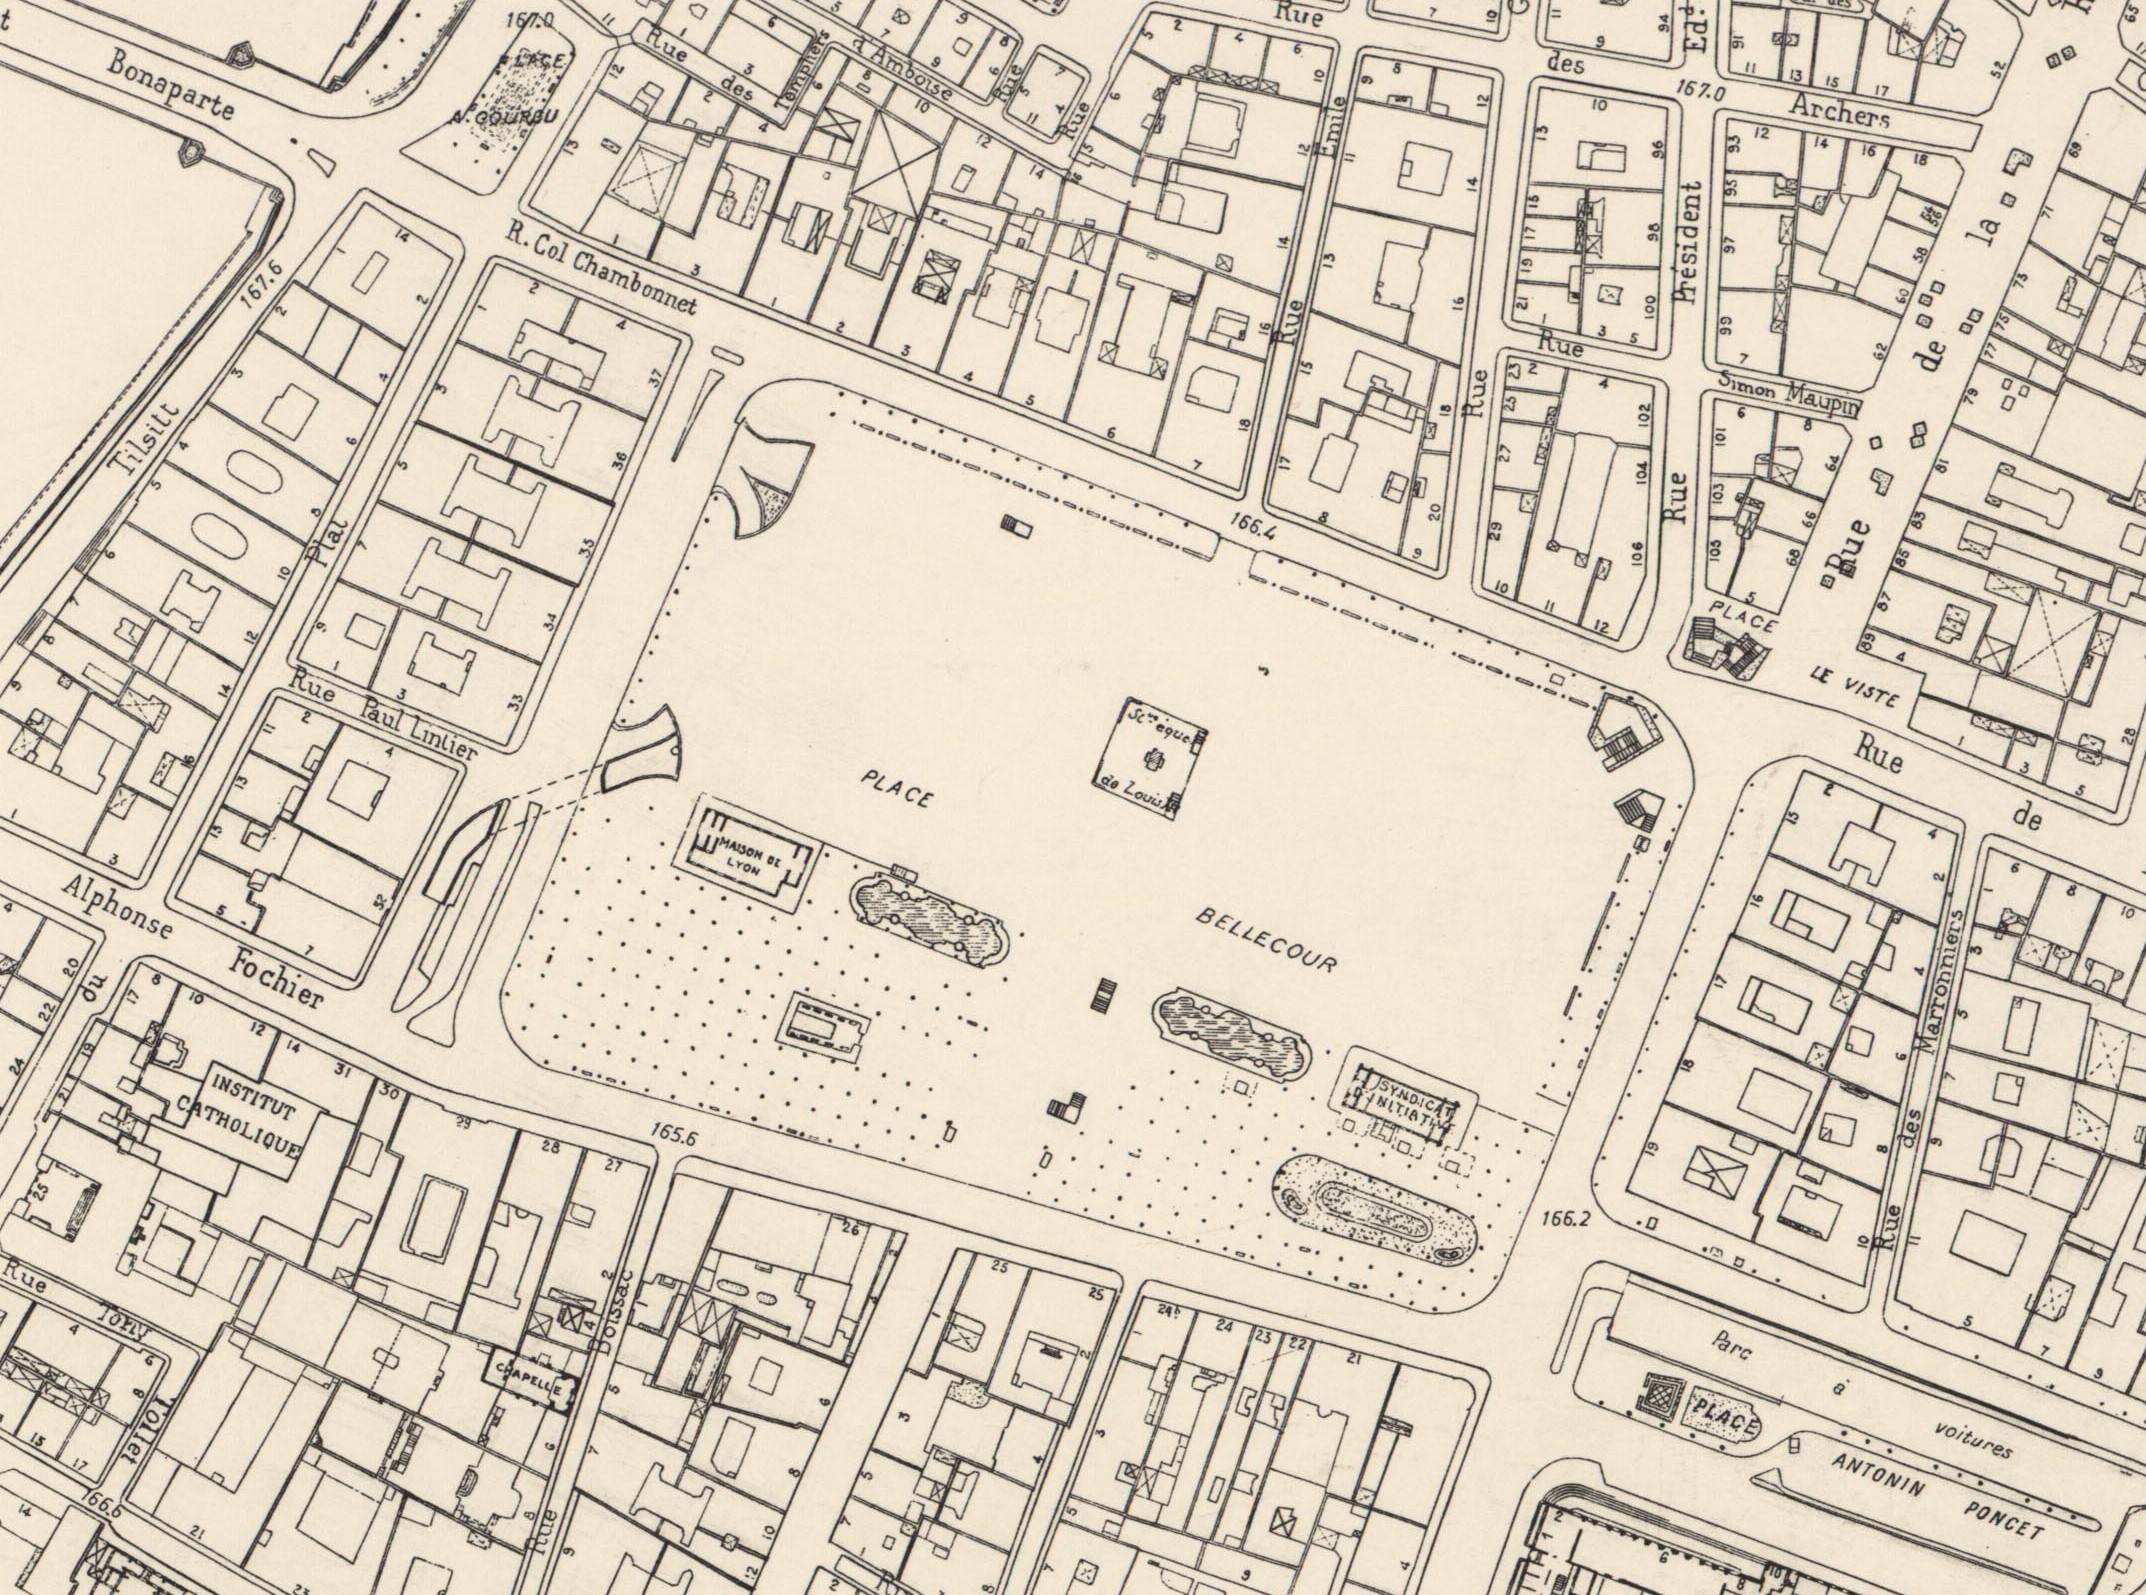 Place Bellecour : plan parcellaire au 1:2000e (1980, cote : 5S/15, détail)